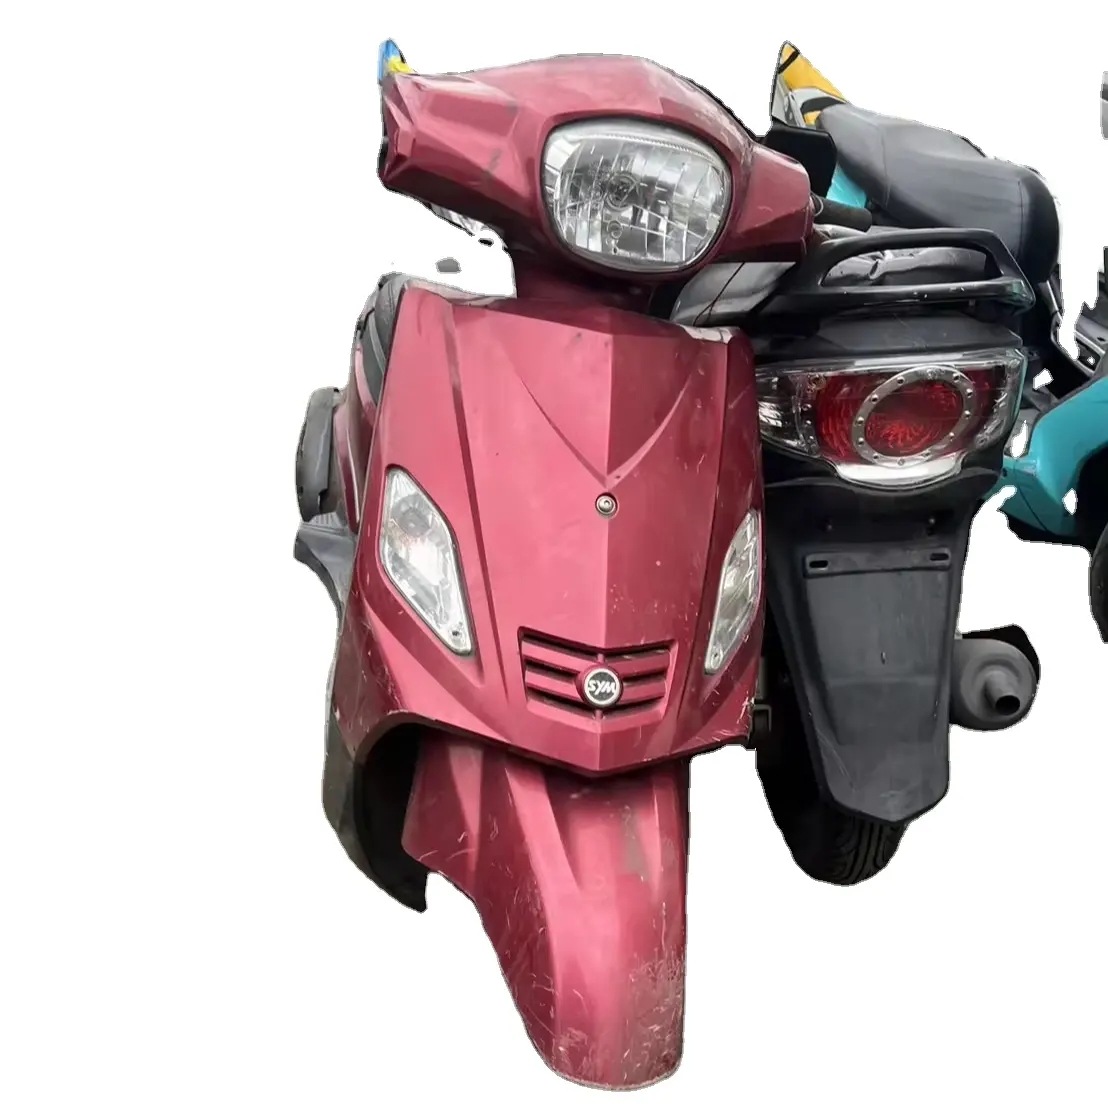 Japanisches hochwertiges gebrauchtes Motorrad zum Großhandelspreis